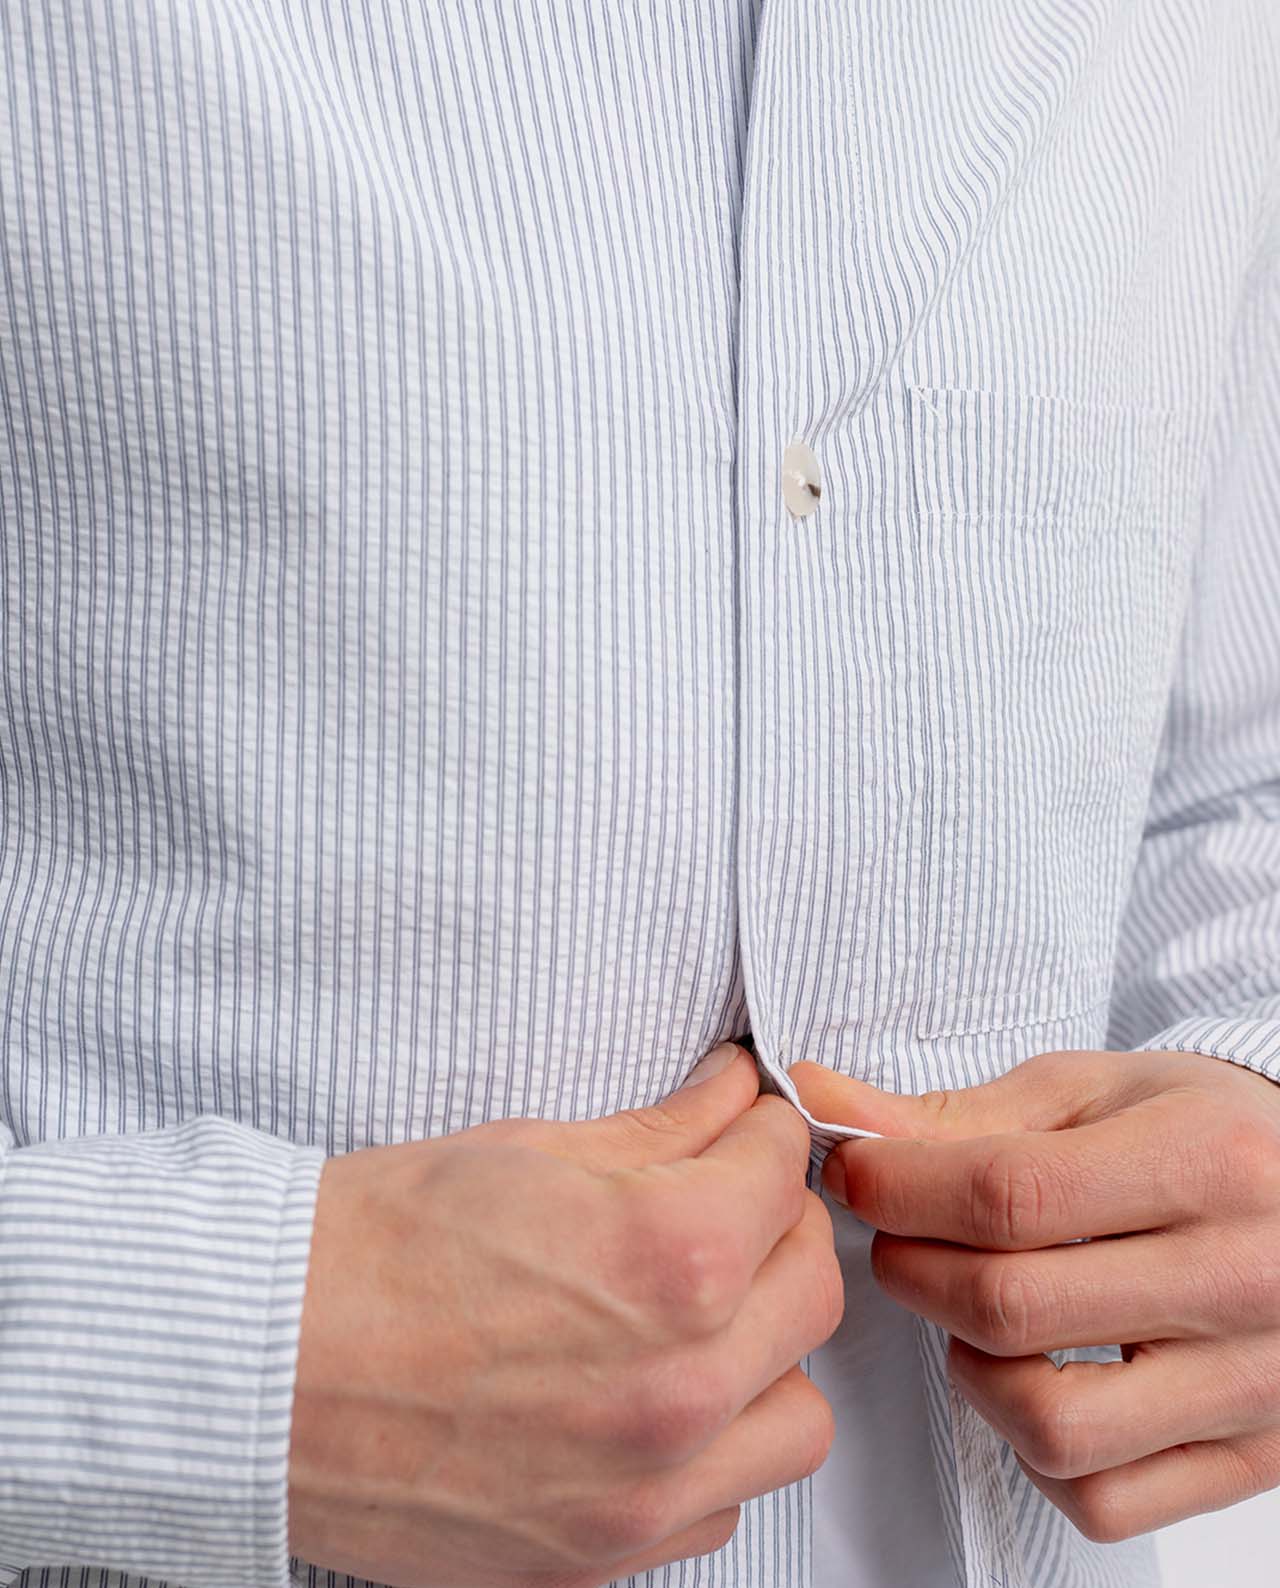 marché commun rotholz sur-chemise homme col officier fines rayures coton biologique fabriquée en europe bleu marine blanc